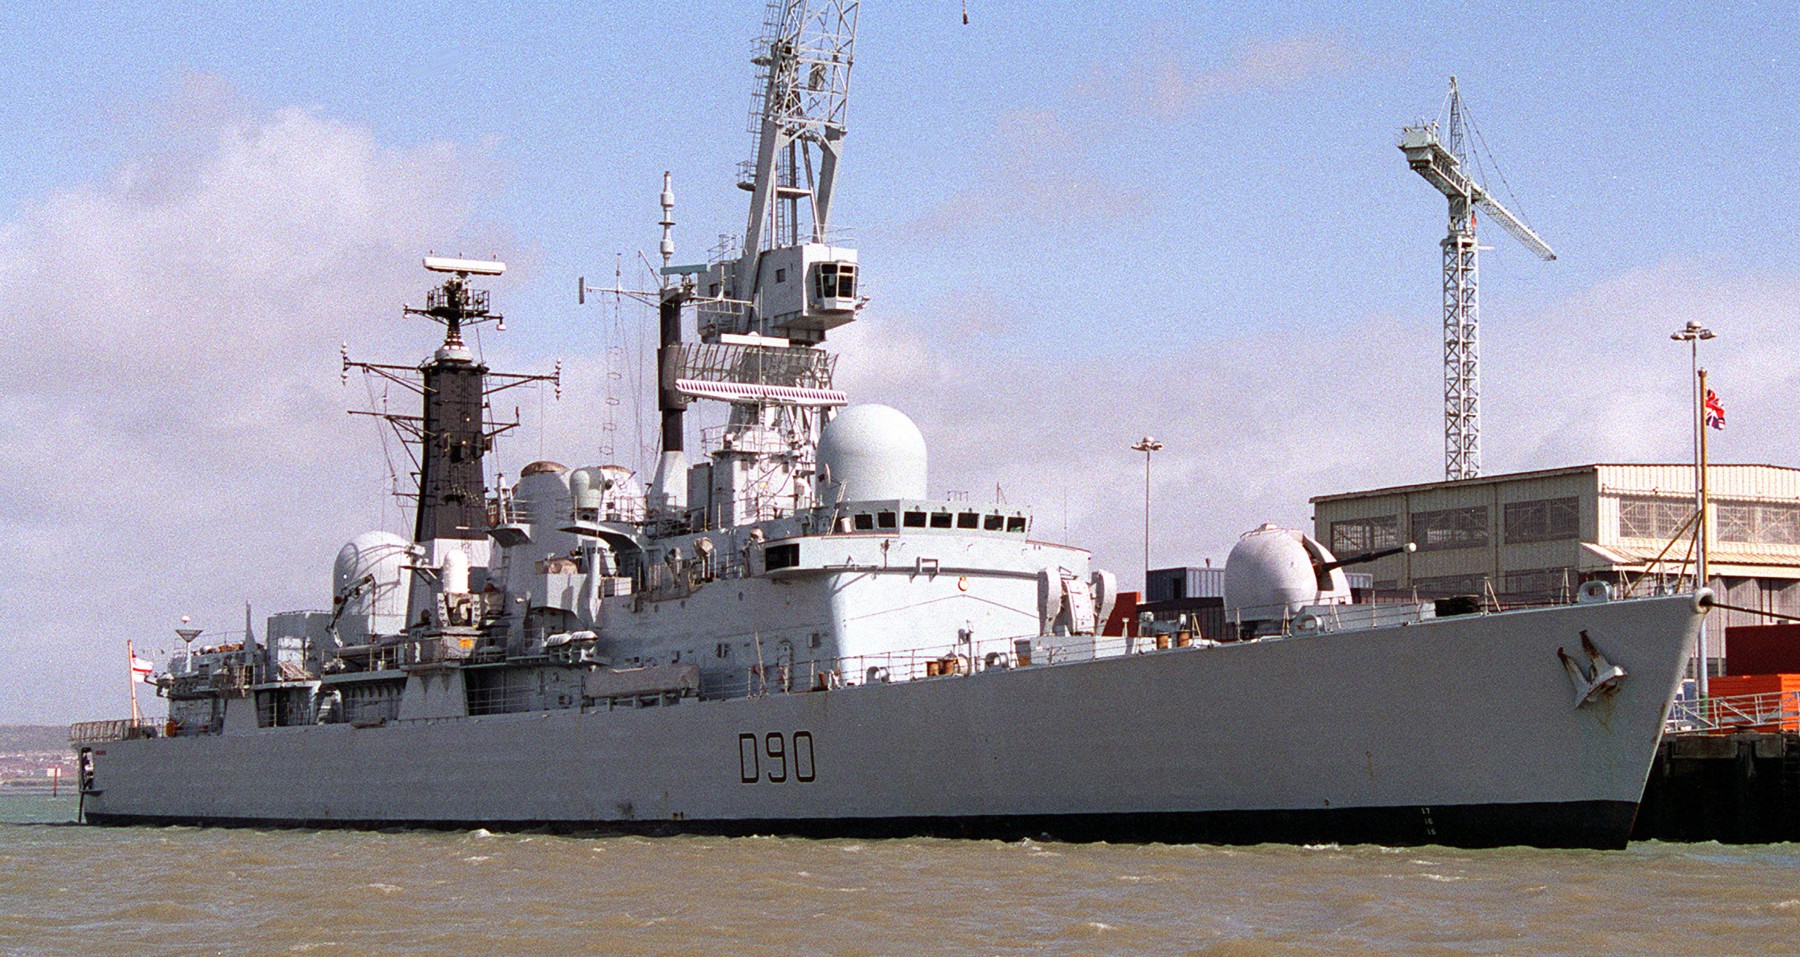 hms southampton d 90 royal navy destroyer